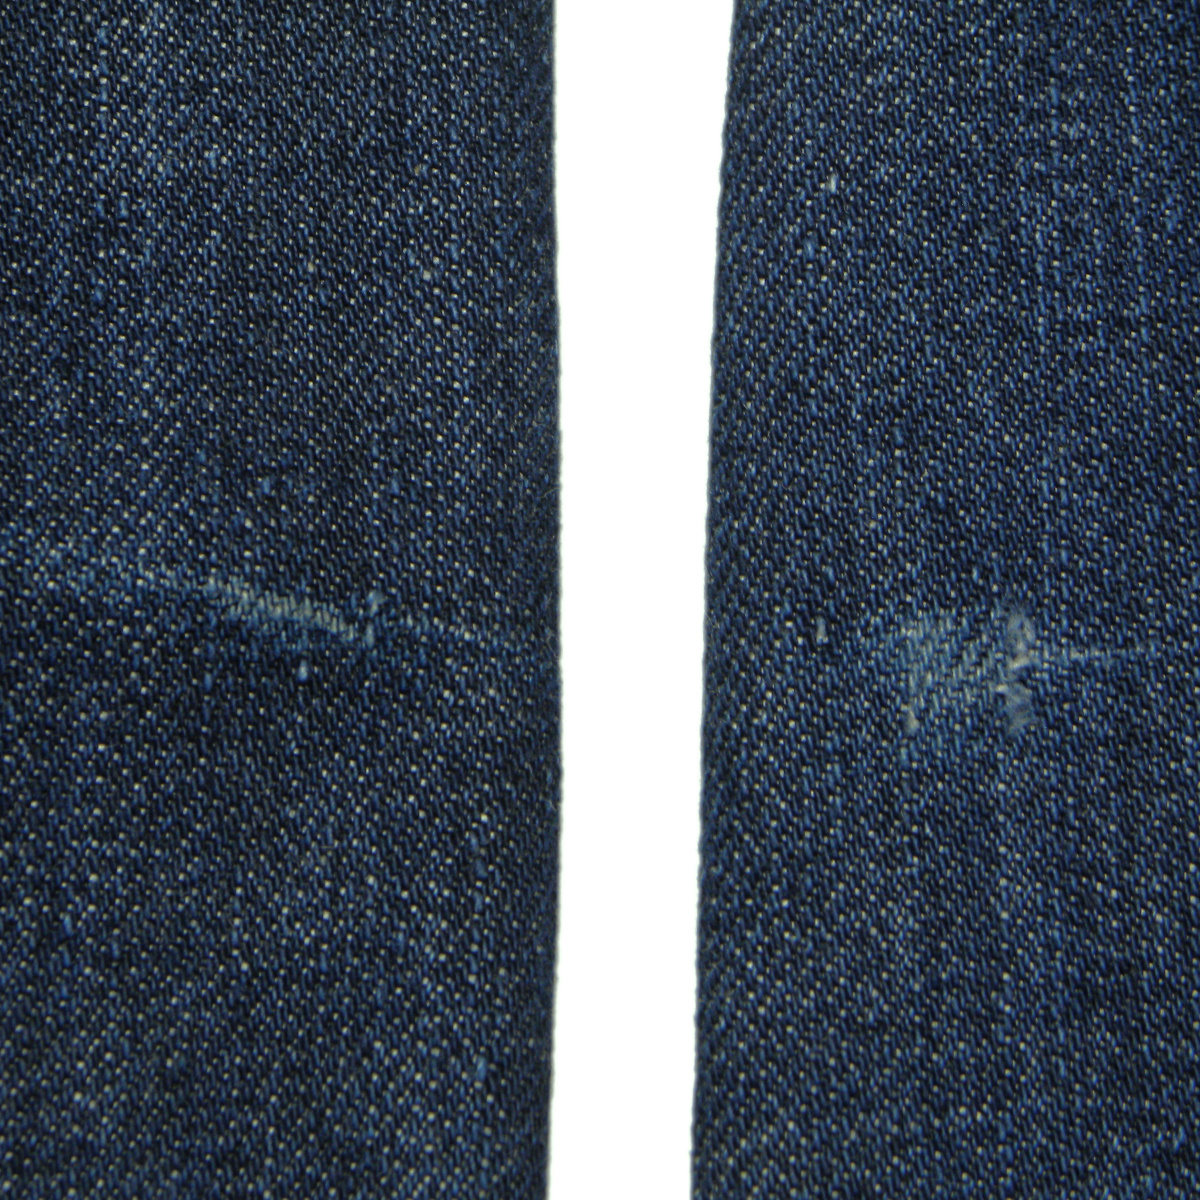 リーバイス577 W34 ローライズタイトブーツカットジーンズ 577-03_左:右足の線状色落ち 右:左足の色落ち小傷